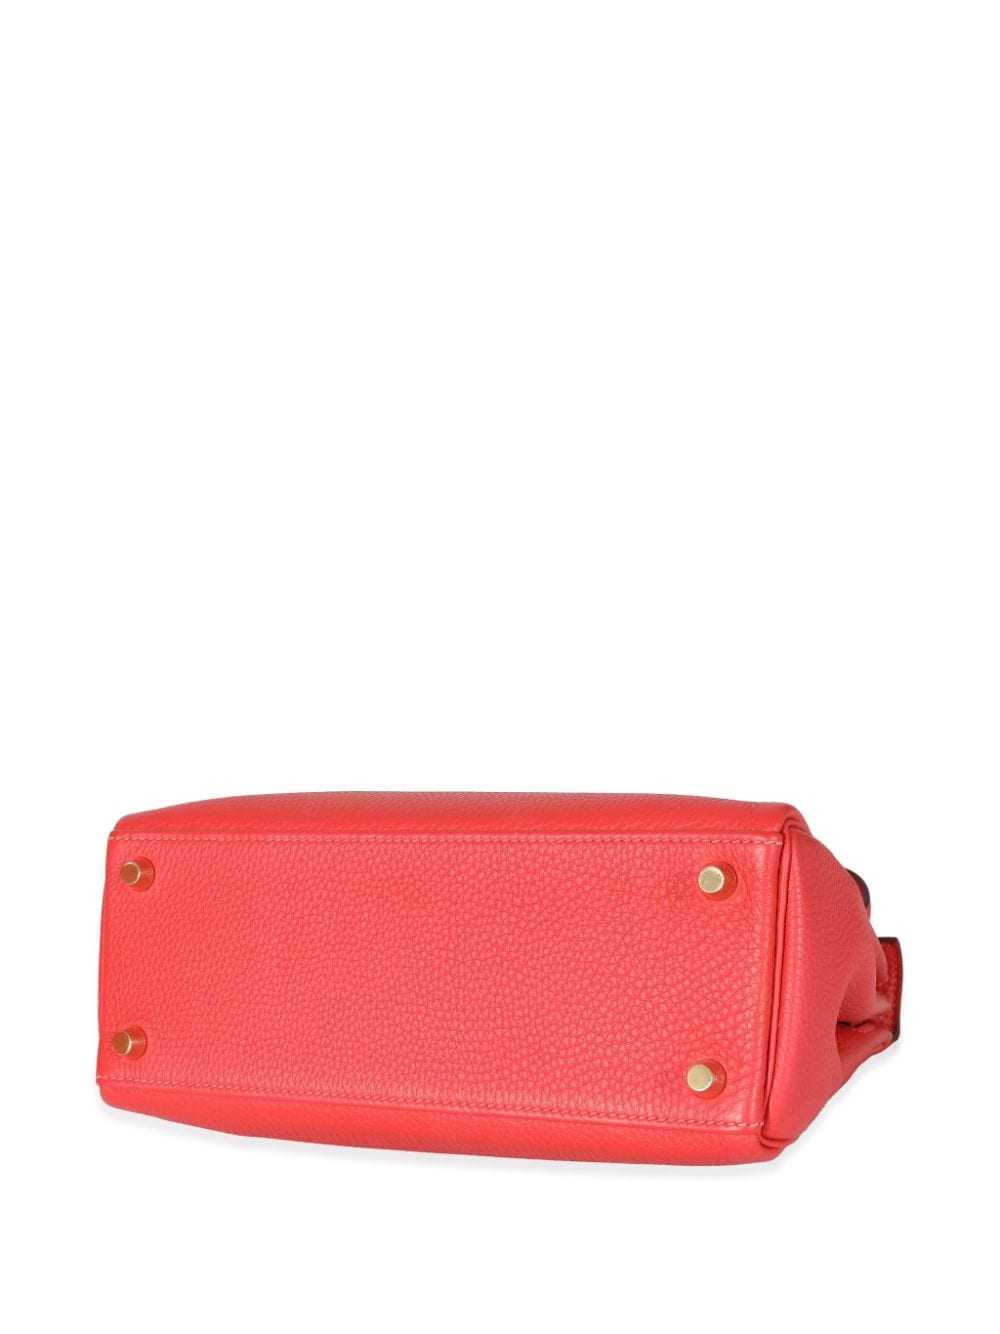 Hermès Pre-Owned 2014 Kelly 25 handbag - Red - image 4